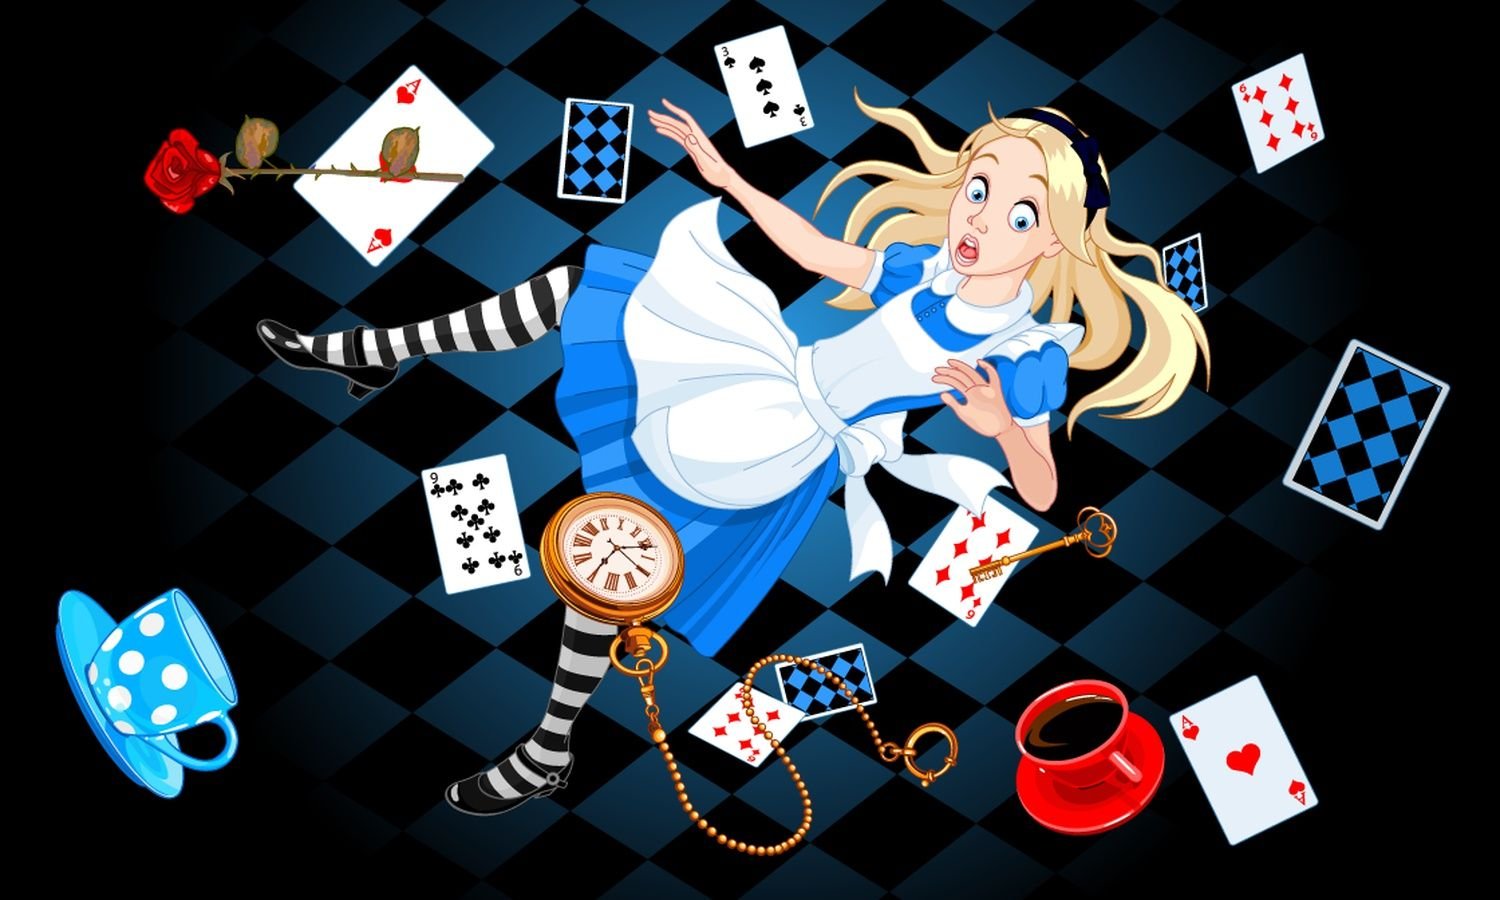 Алиса в стране чудес 1 сказка. Алиса в стране чудес. Алиса в стране чудес Алиса. Кэрролл Льюис "Алиса в стране чудес". Алиса в стране чудес персонажи иллюстрации.